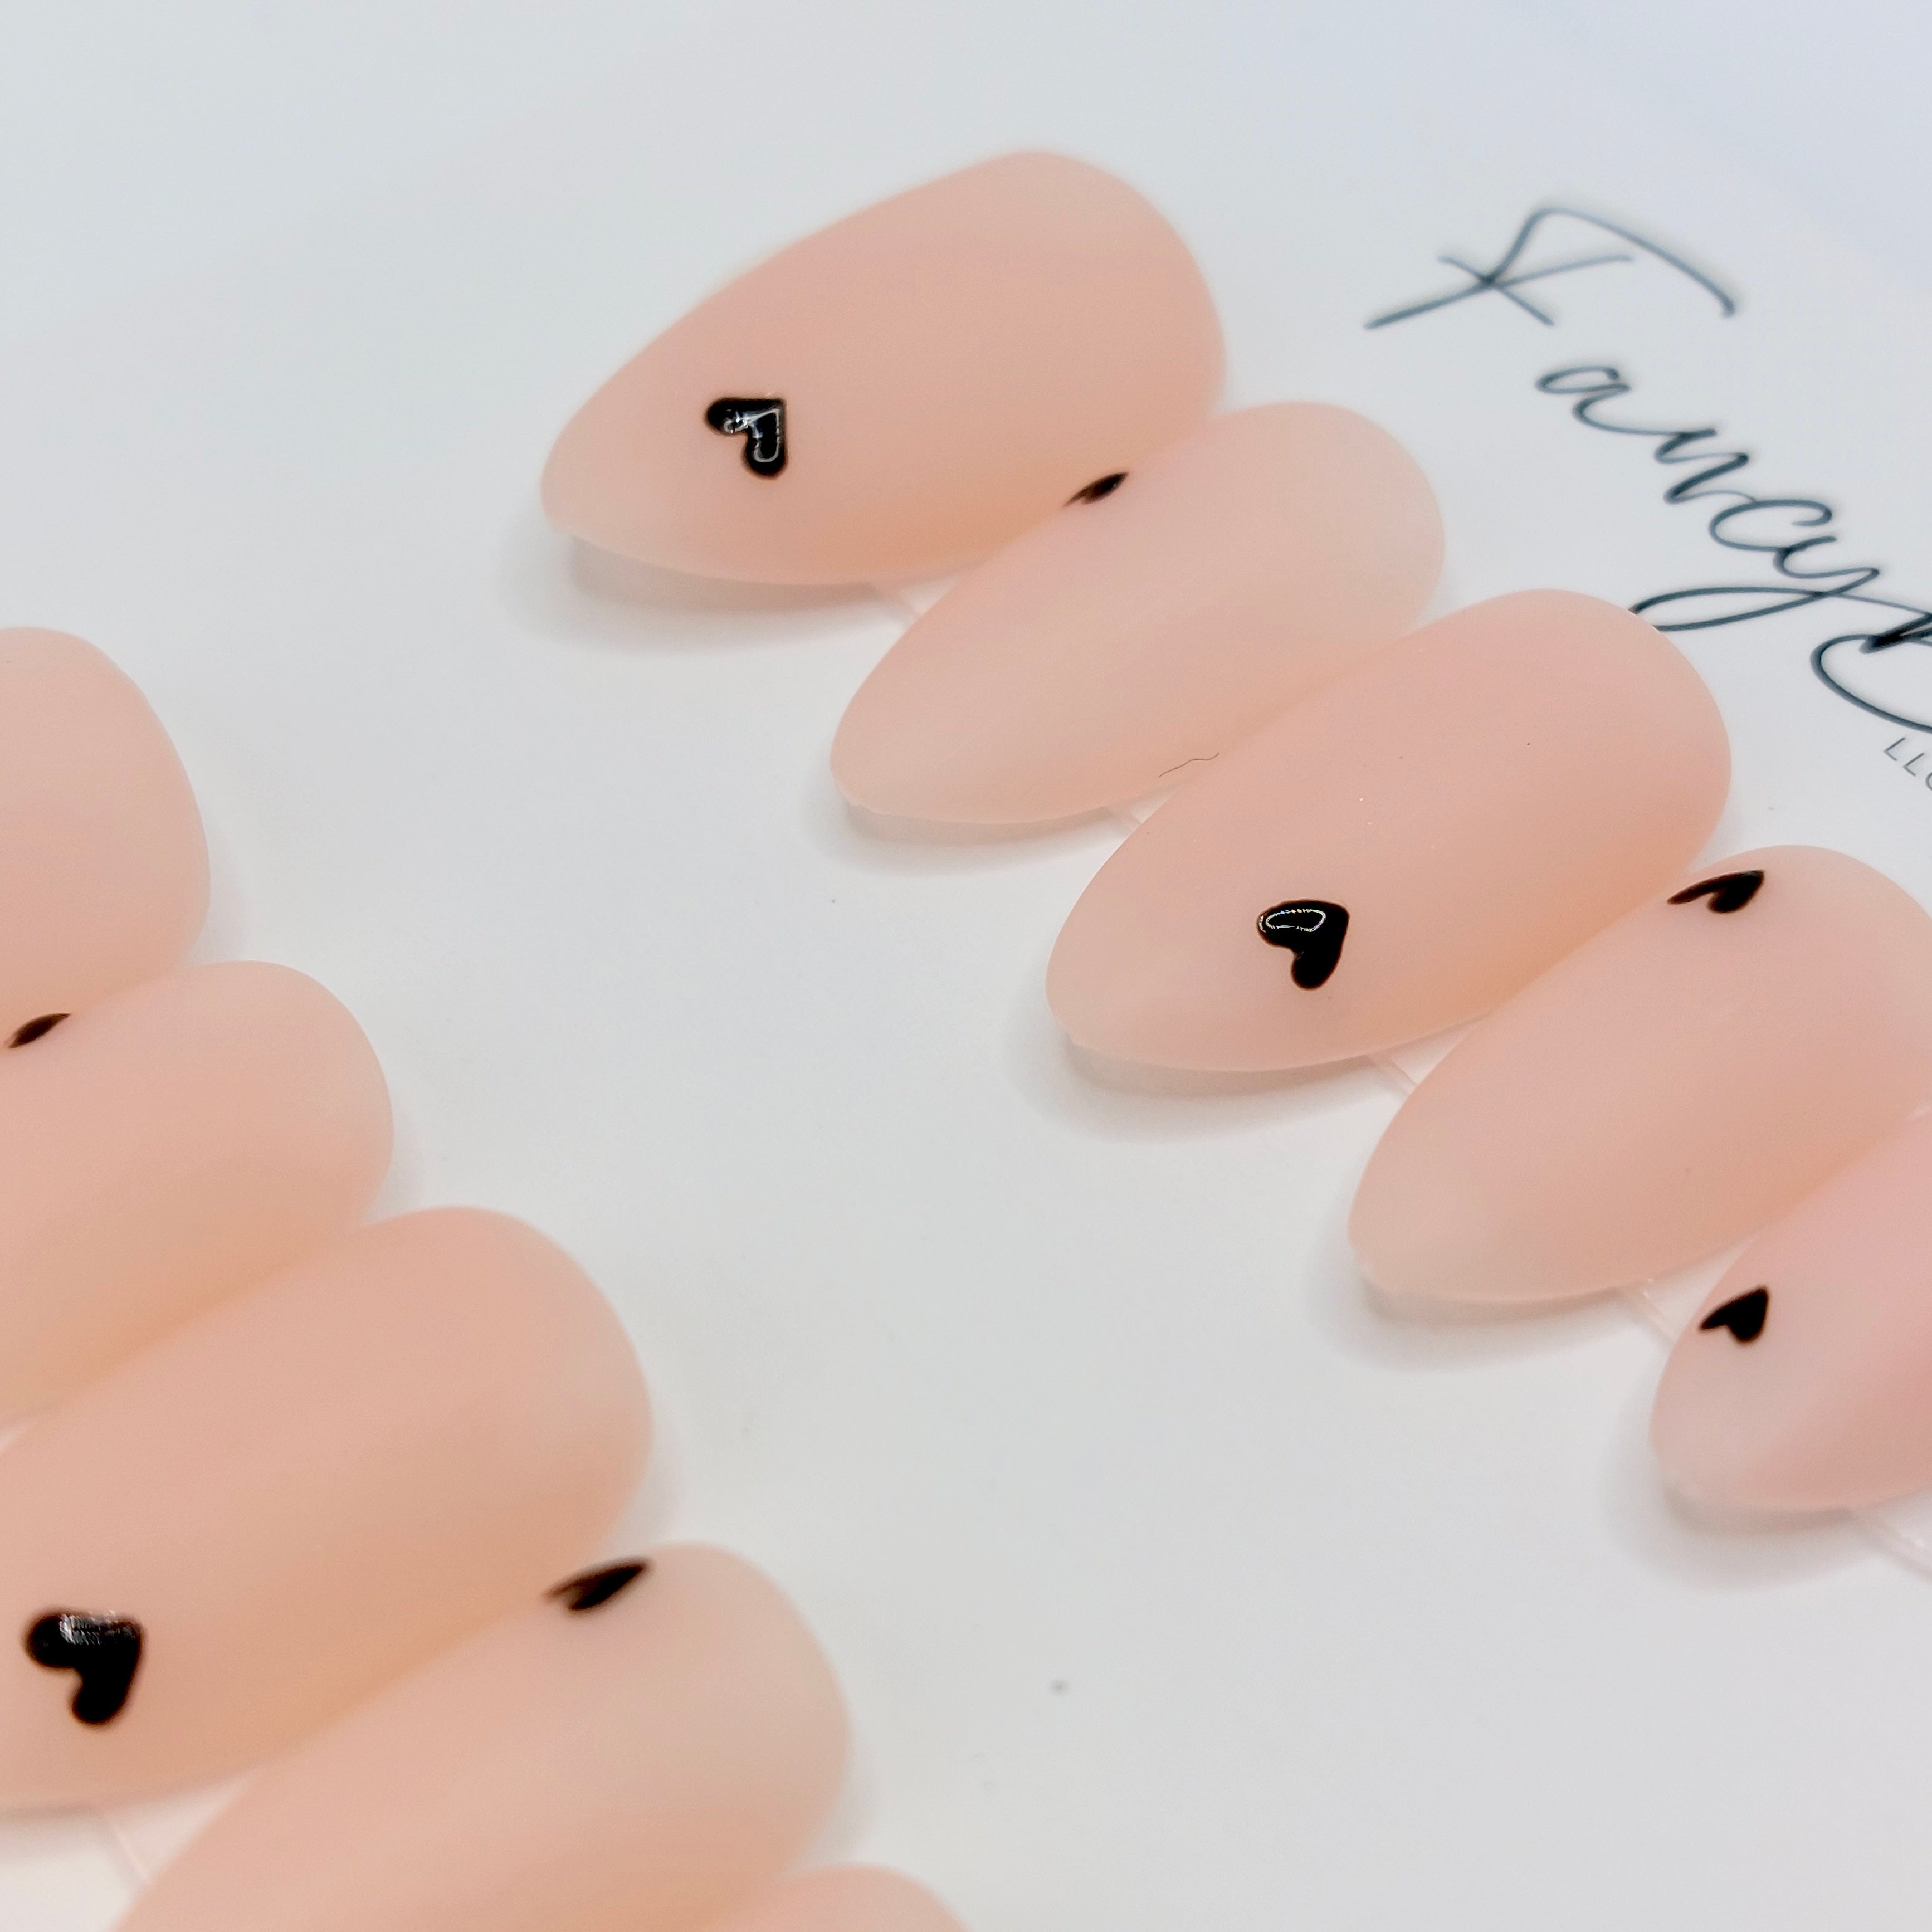 Tiny Hearts Nails (24pcs) - Short Almond